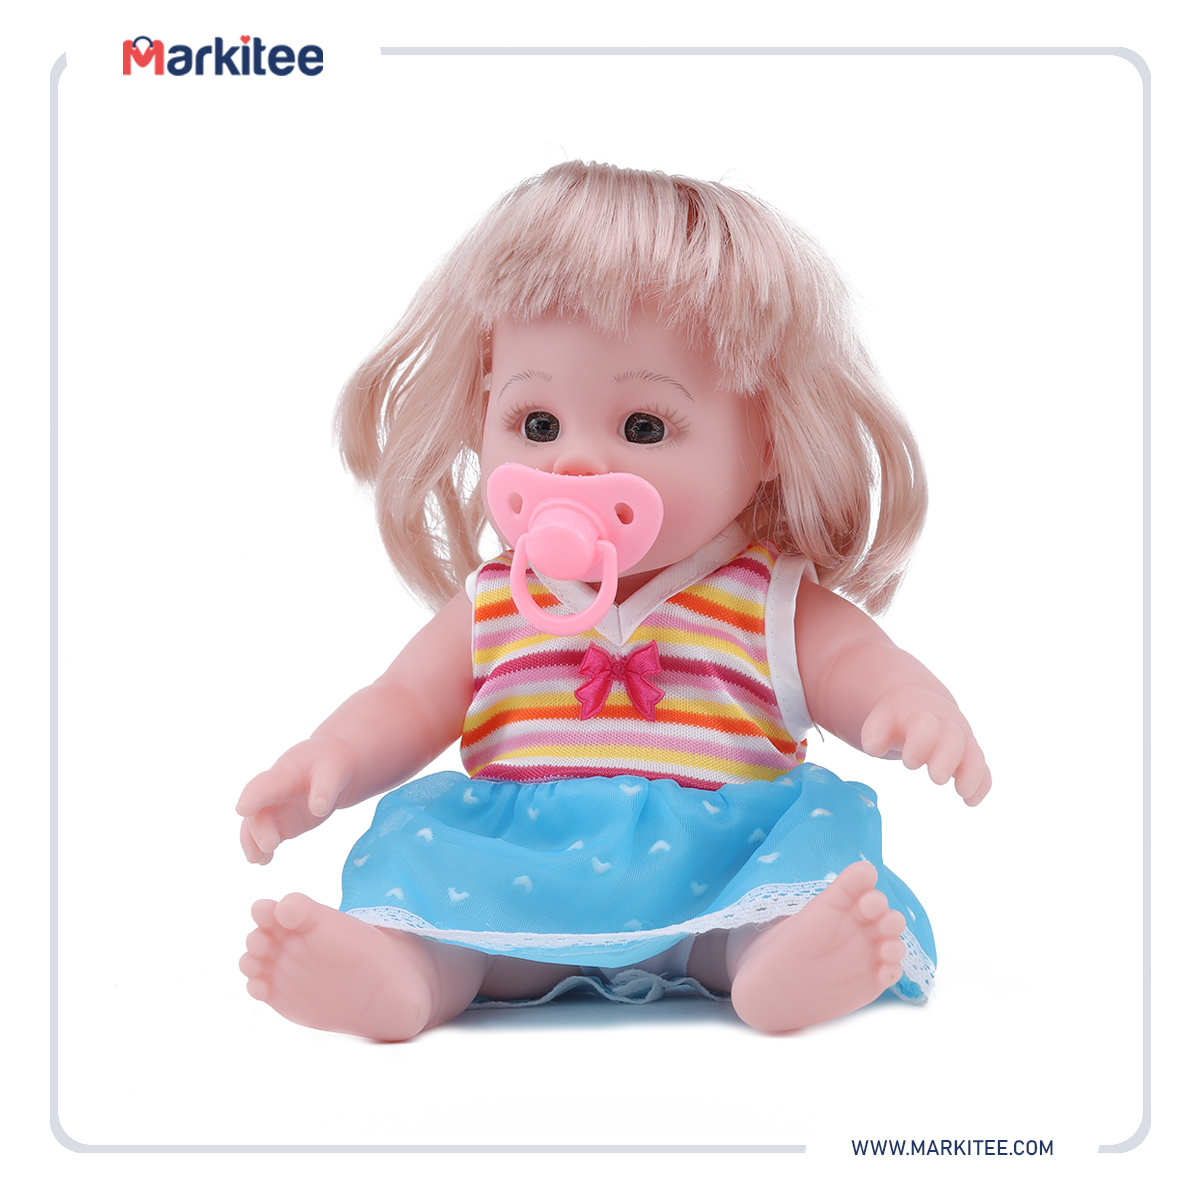 ماركيتي-markitee-20220531112102899_Markitee-Toys-Ty-395-2(3).jpg